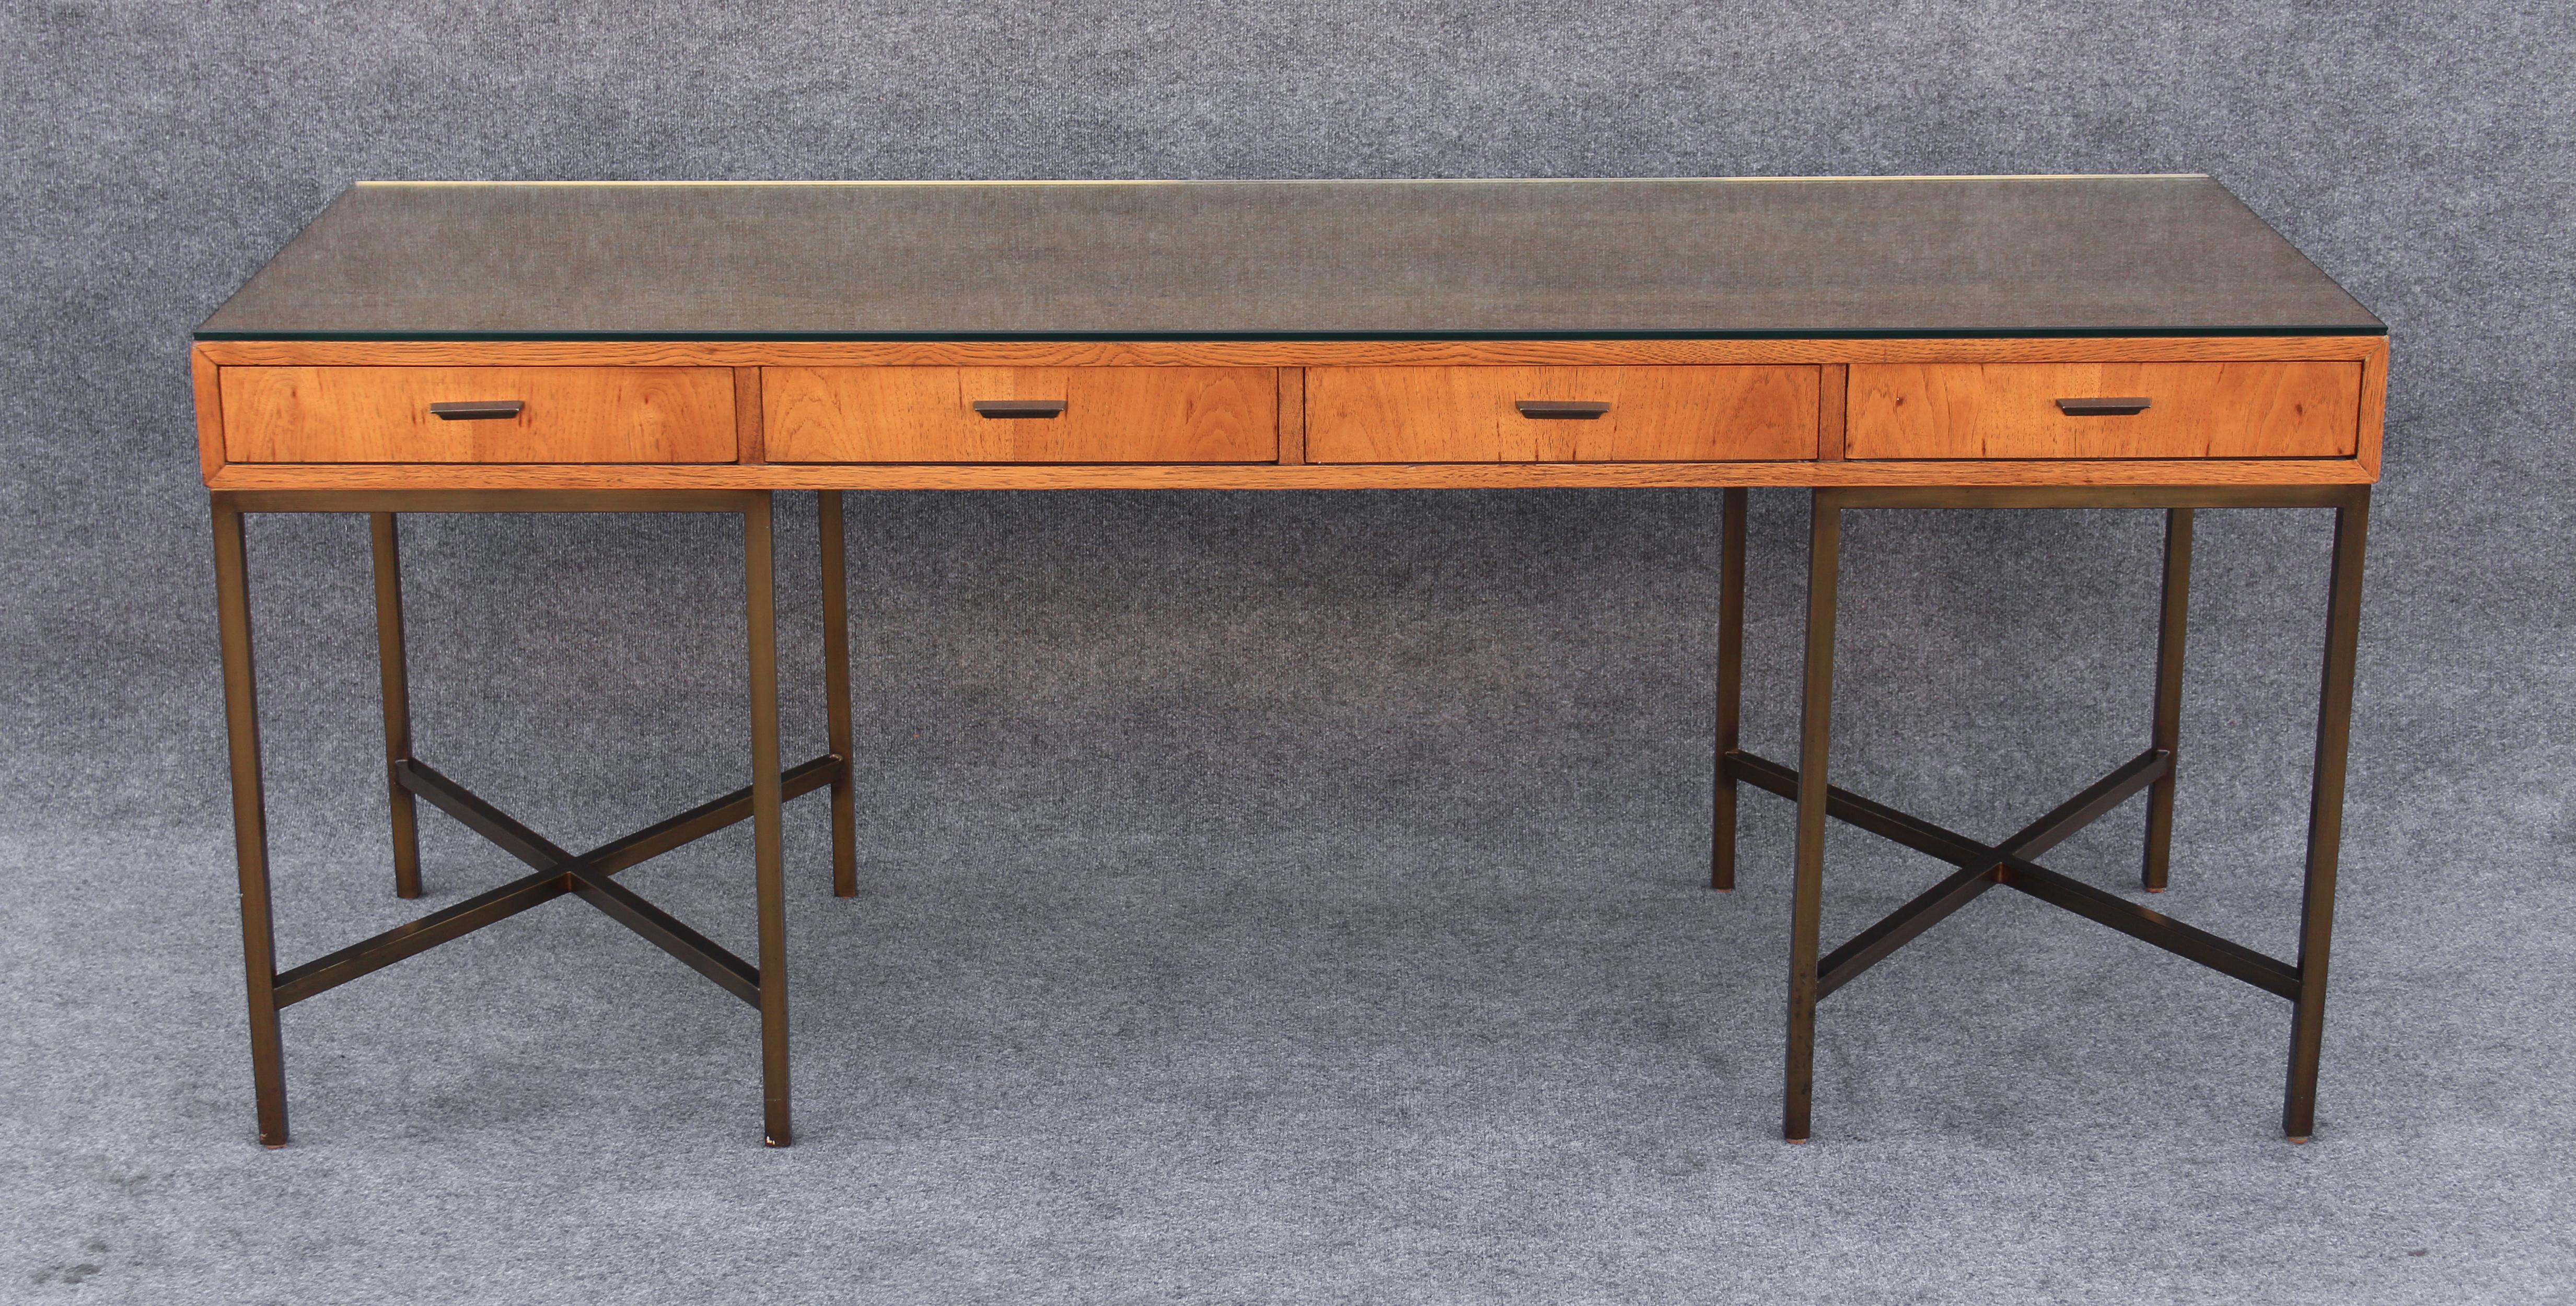 Dieser Ende der 1960er Jahre in den Vereinigten Staaten hergestellte Schreibtisch wurde von Jack Cartwright entworfen und von Founders in sehr geringen Stückzahlen hergestellt, wahrscheinlich aufgrund der hohen Qualitätsanforderungen bei der